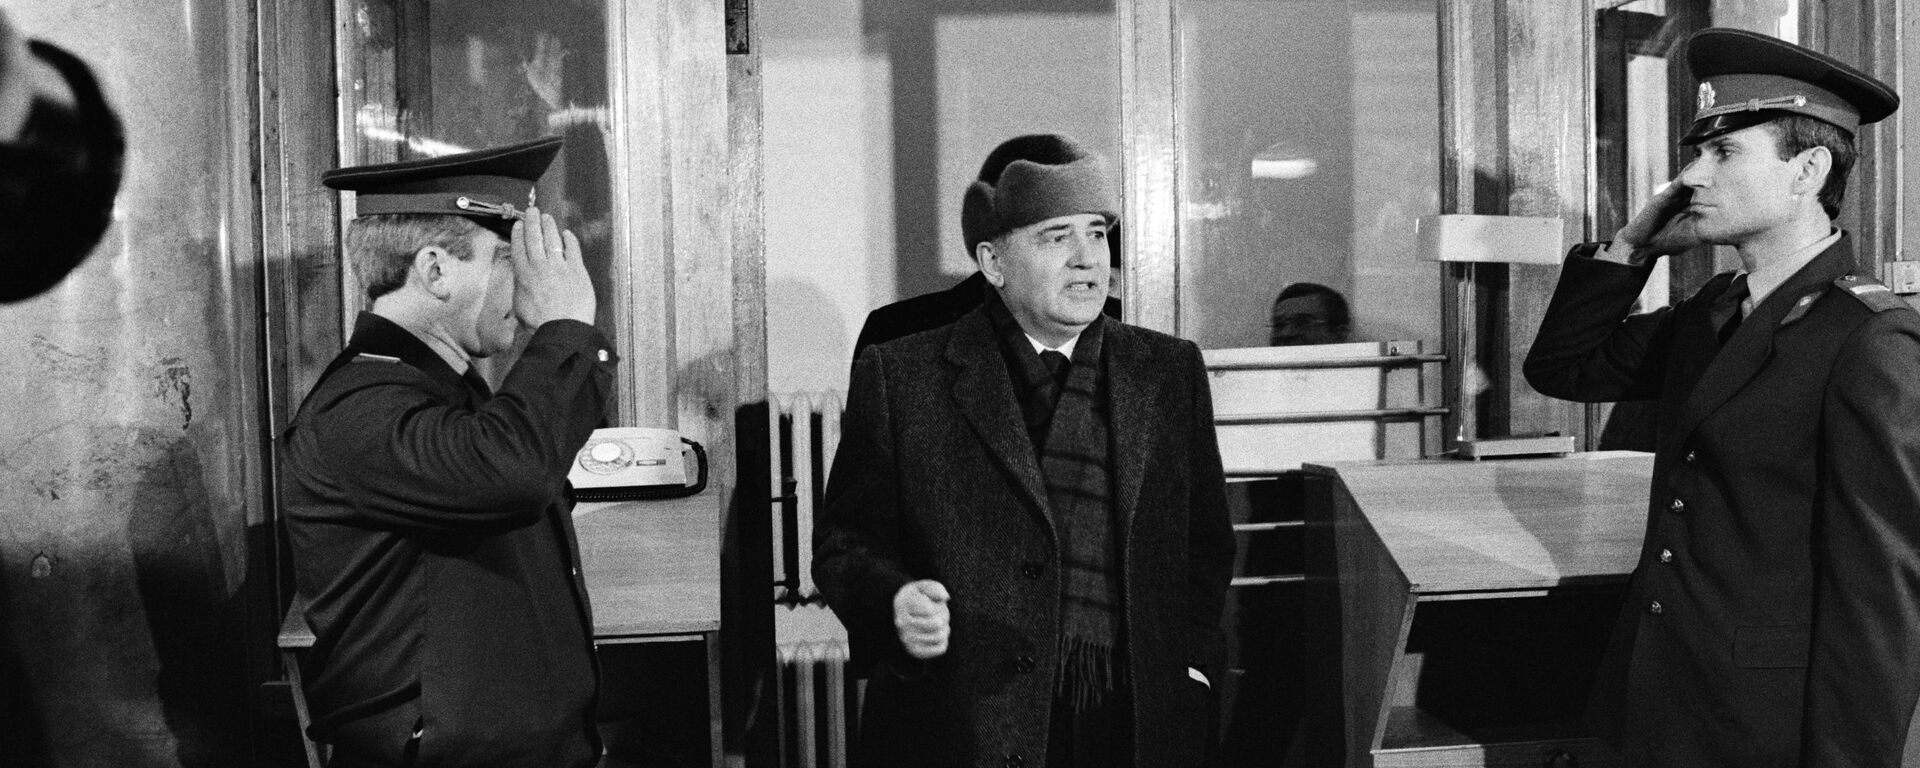 Первый день в Горбачев-фонде, после отставки - Sputnik Mundo, 1920, 25.12.2021